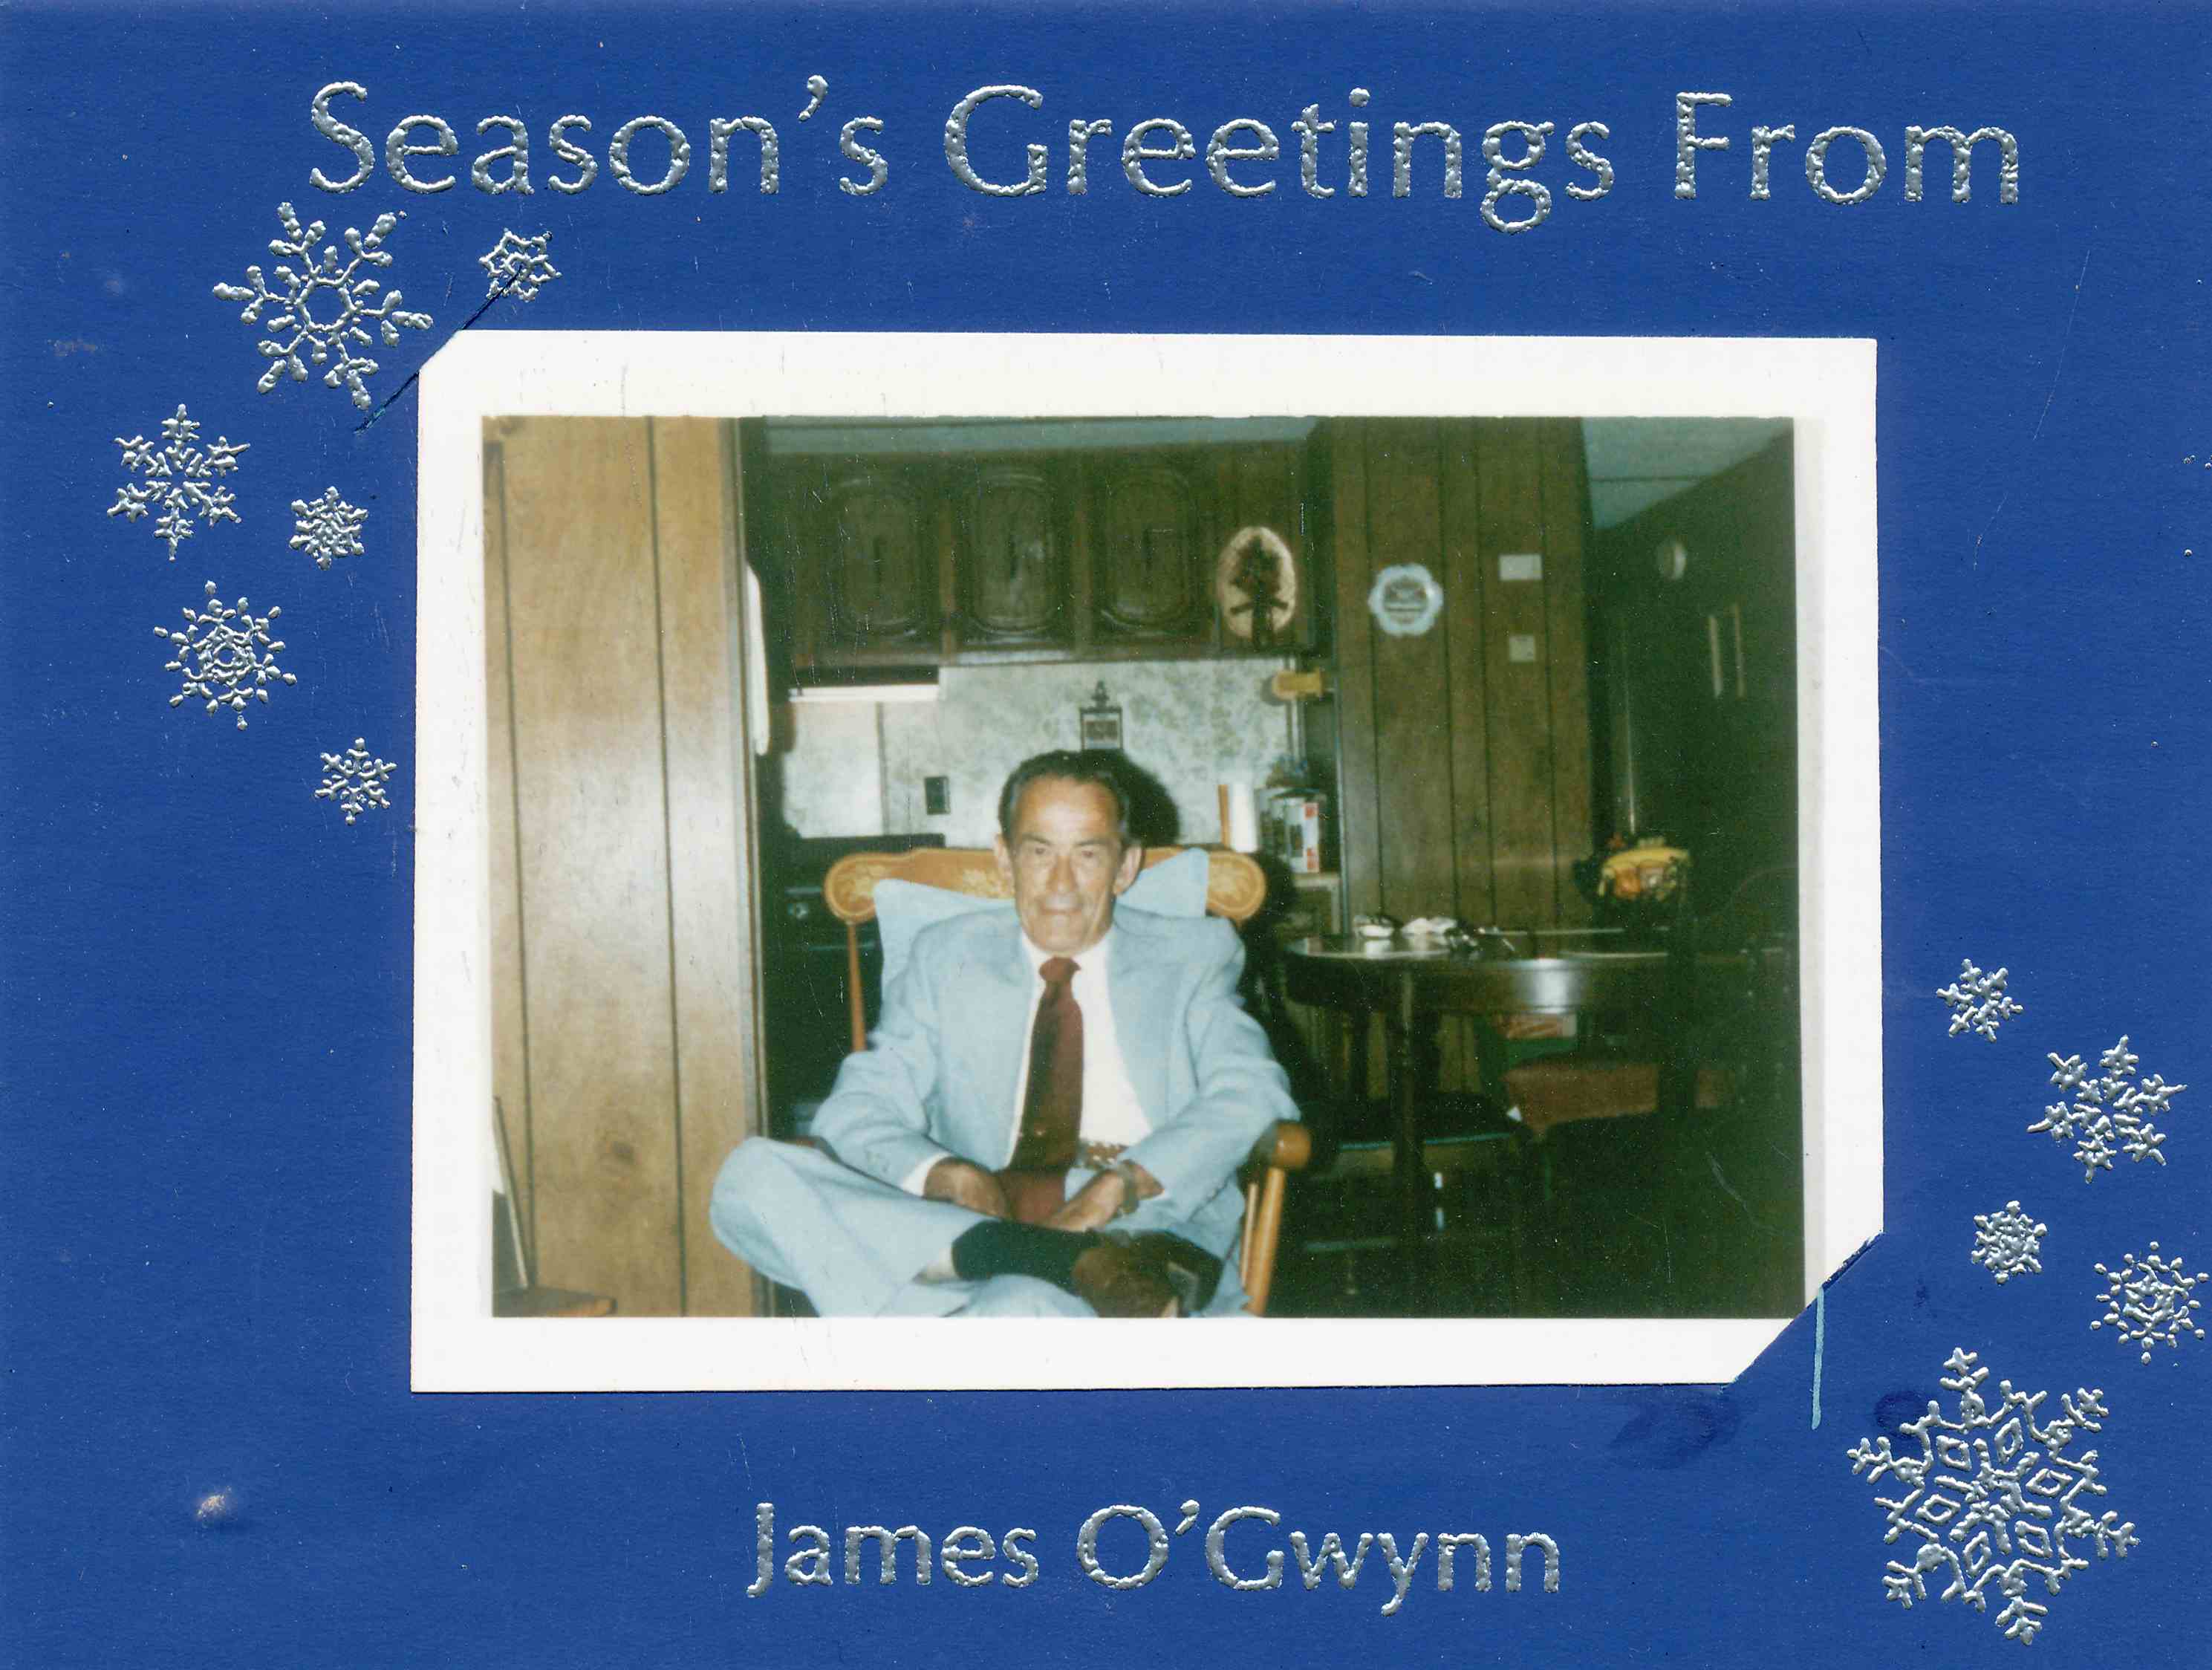 James O'Gwynn 1987